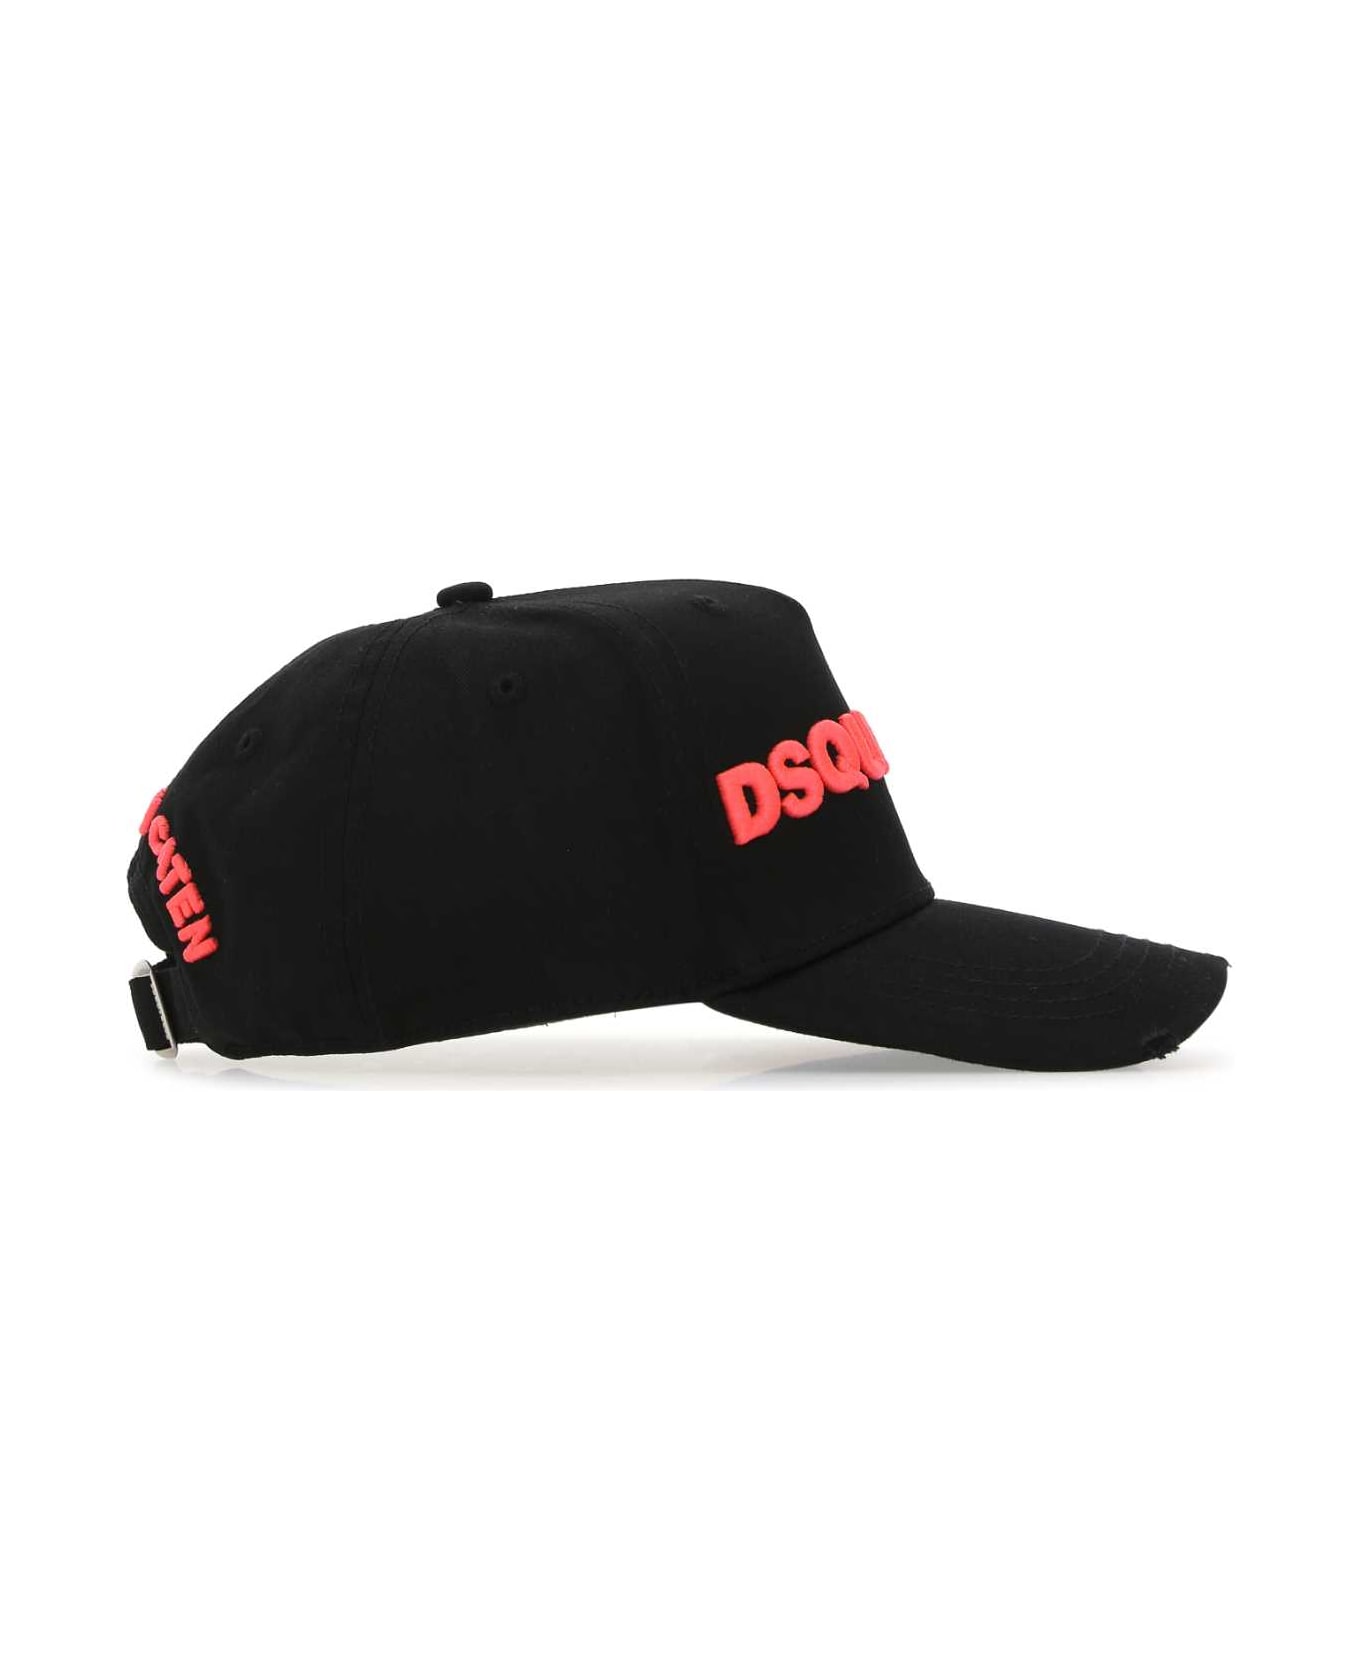 Dsquared2 Black Cotton Baseball Cap - M221